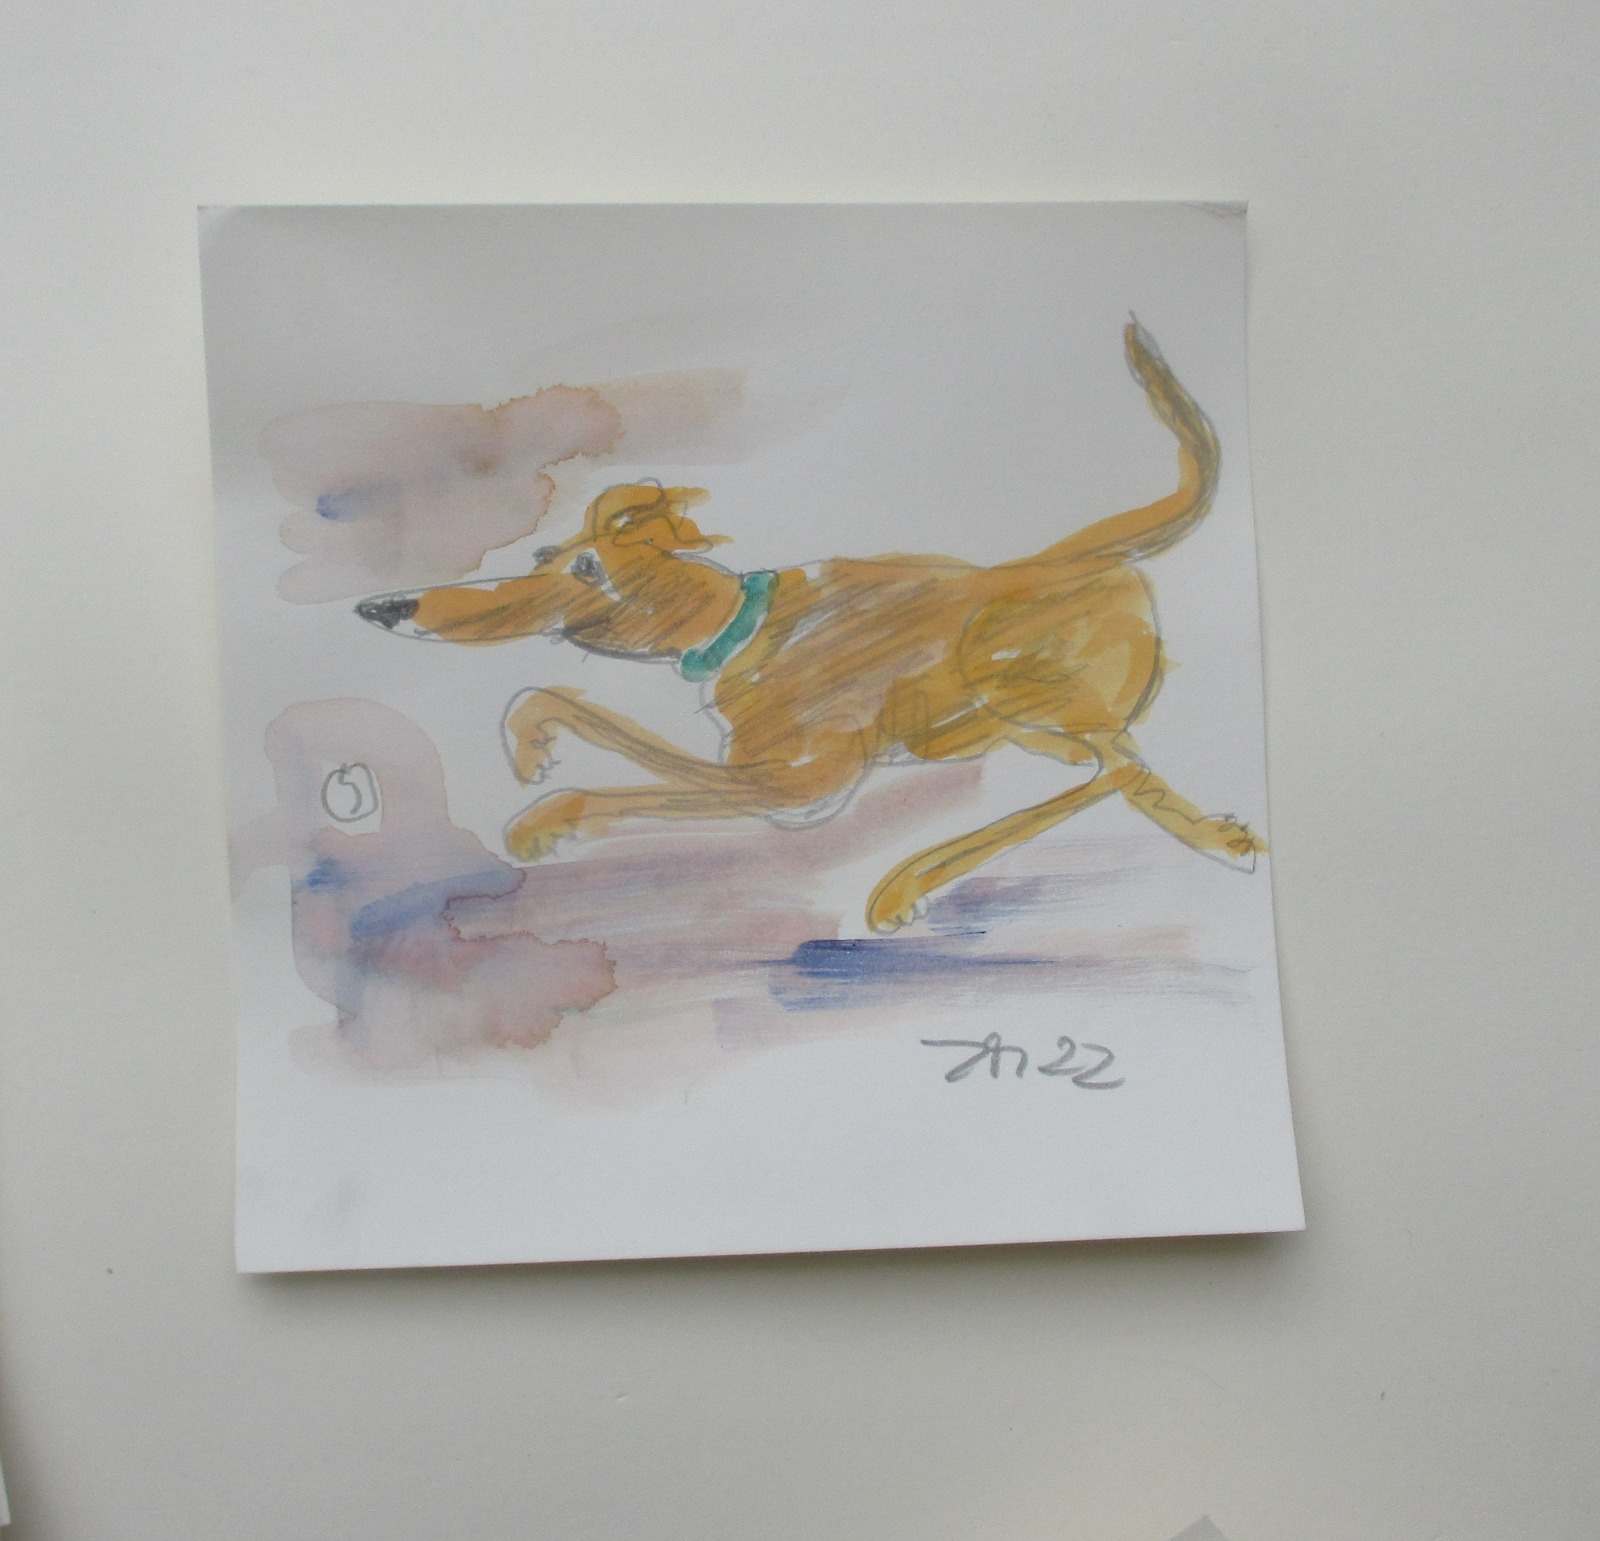 4 Hunde Bulldoggen expressive Original Zeichnung auf Papier Tusche 4x20x20 cm 4